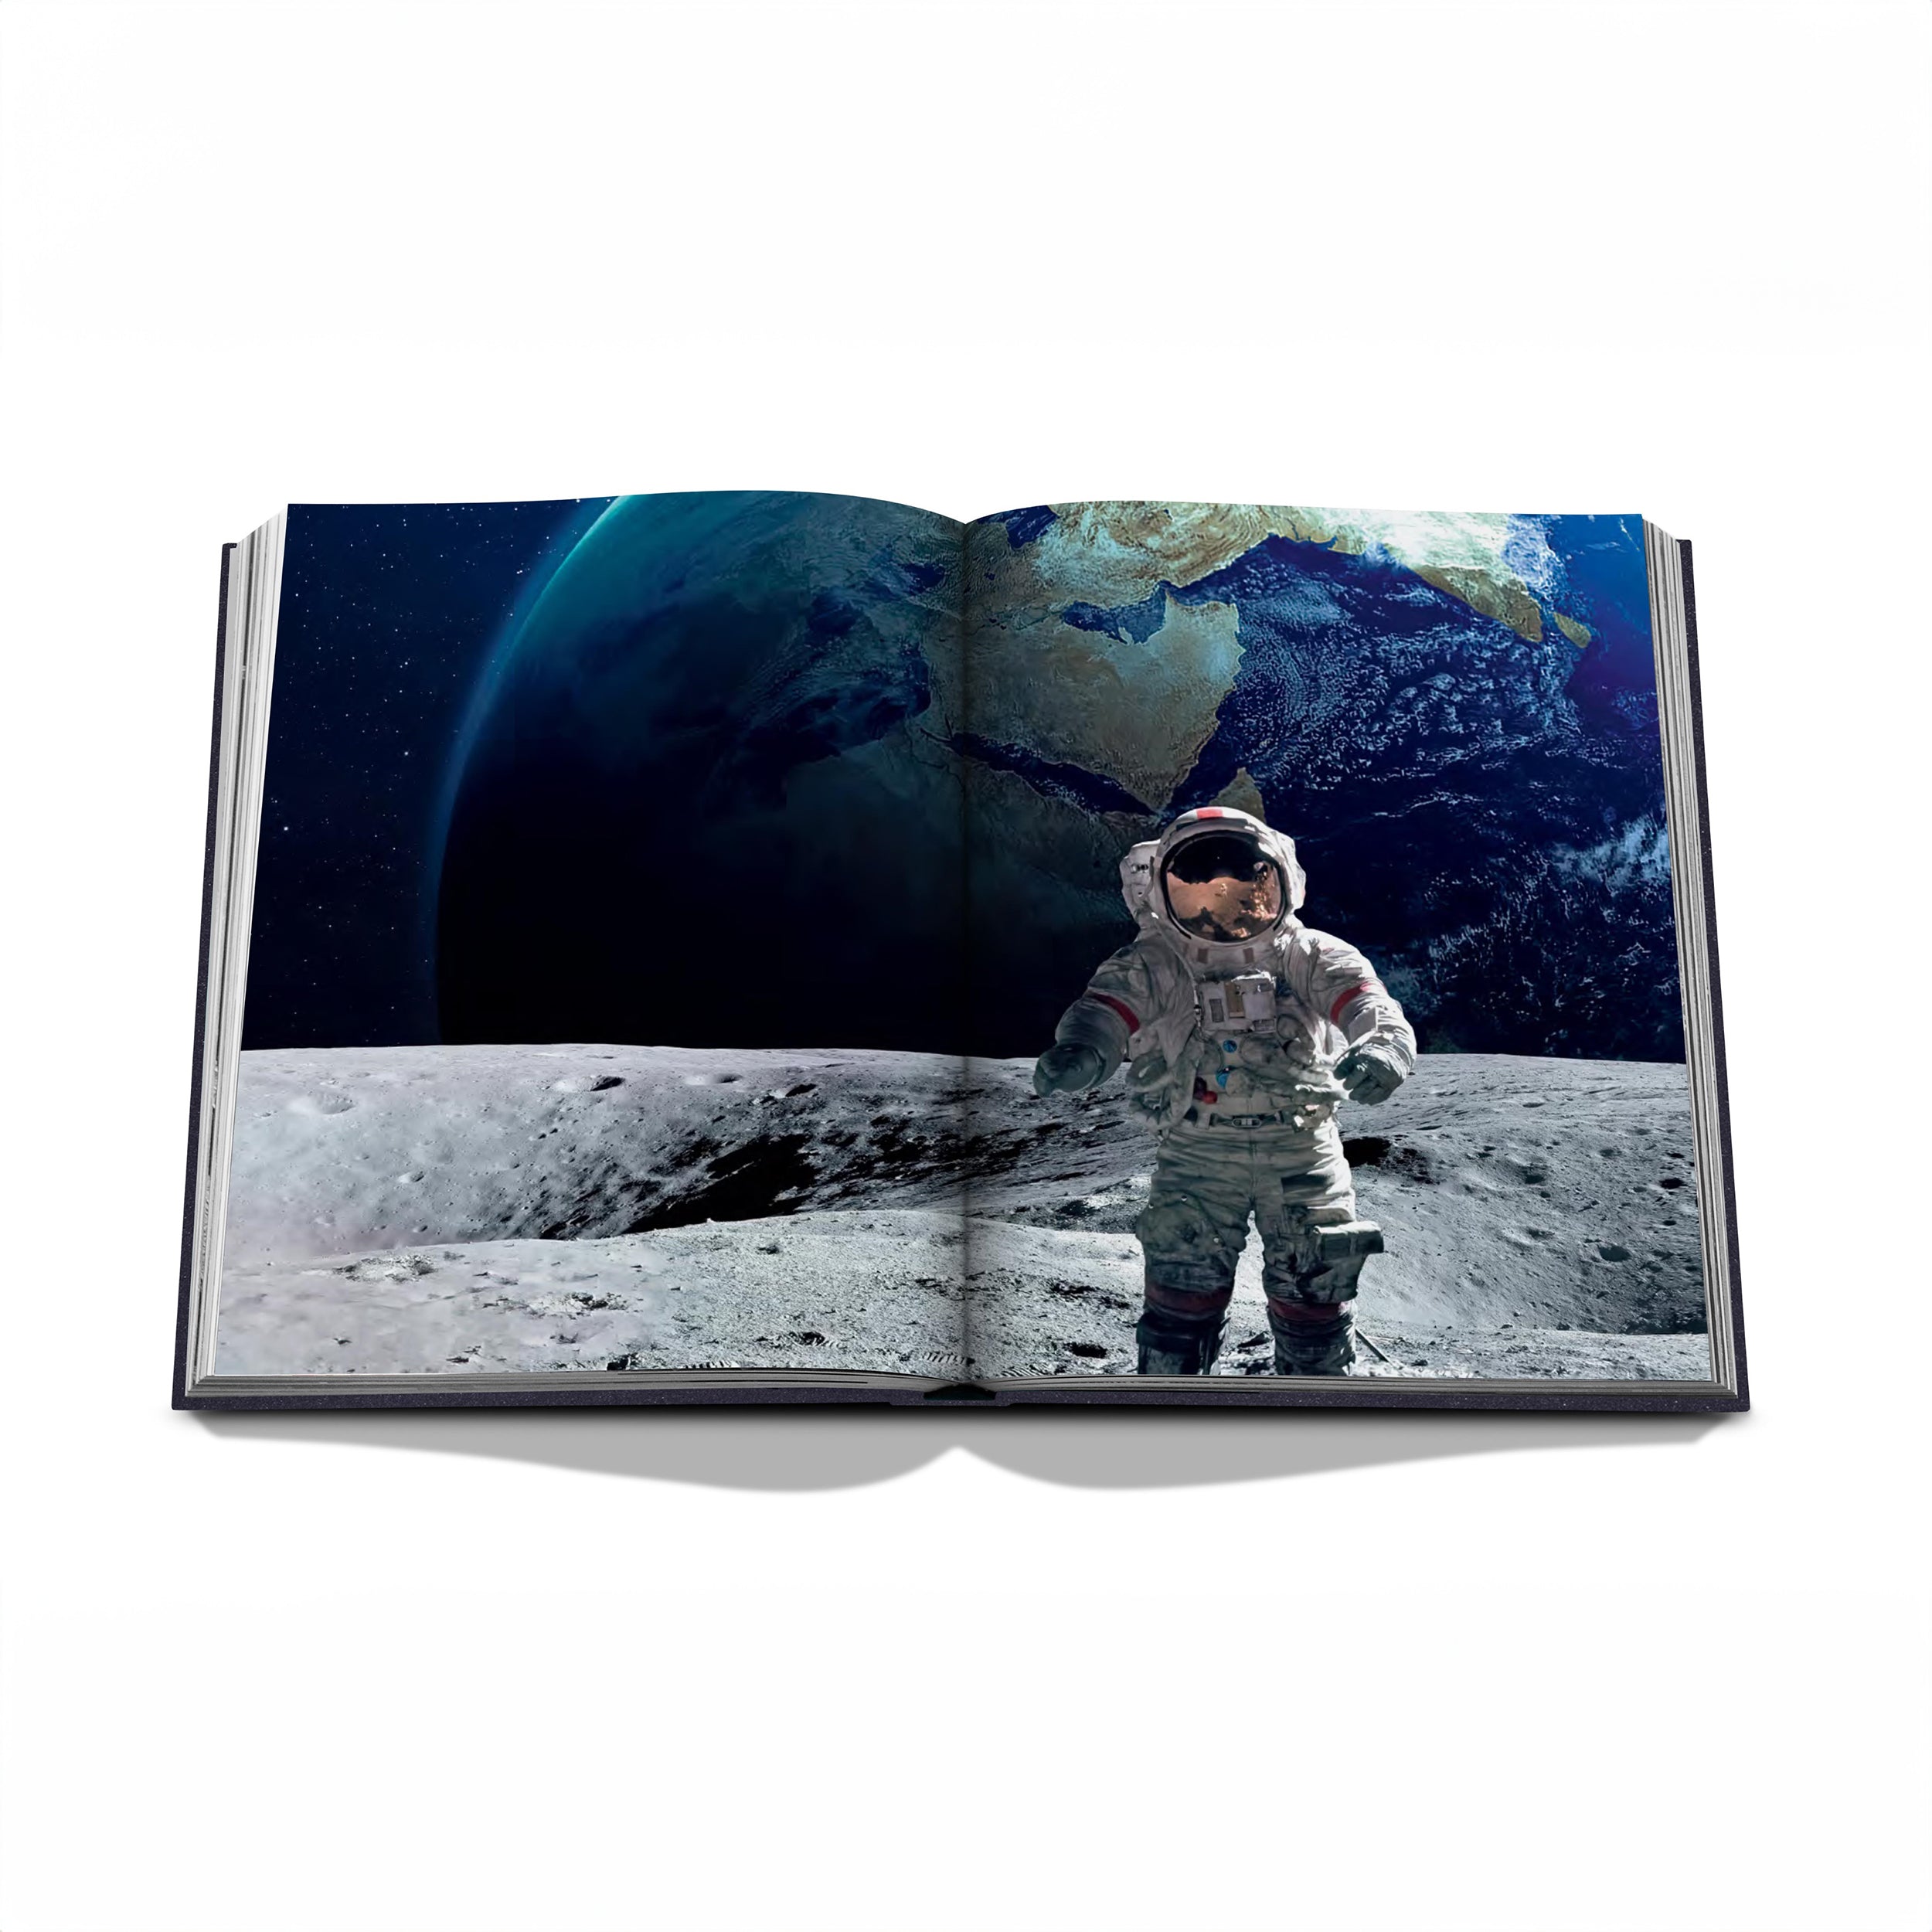 Herring & Bones - Concept Store Joyeux - Assouline - Livres - Livre Moon Paradise